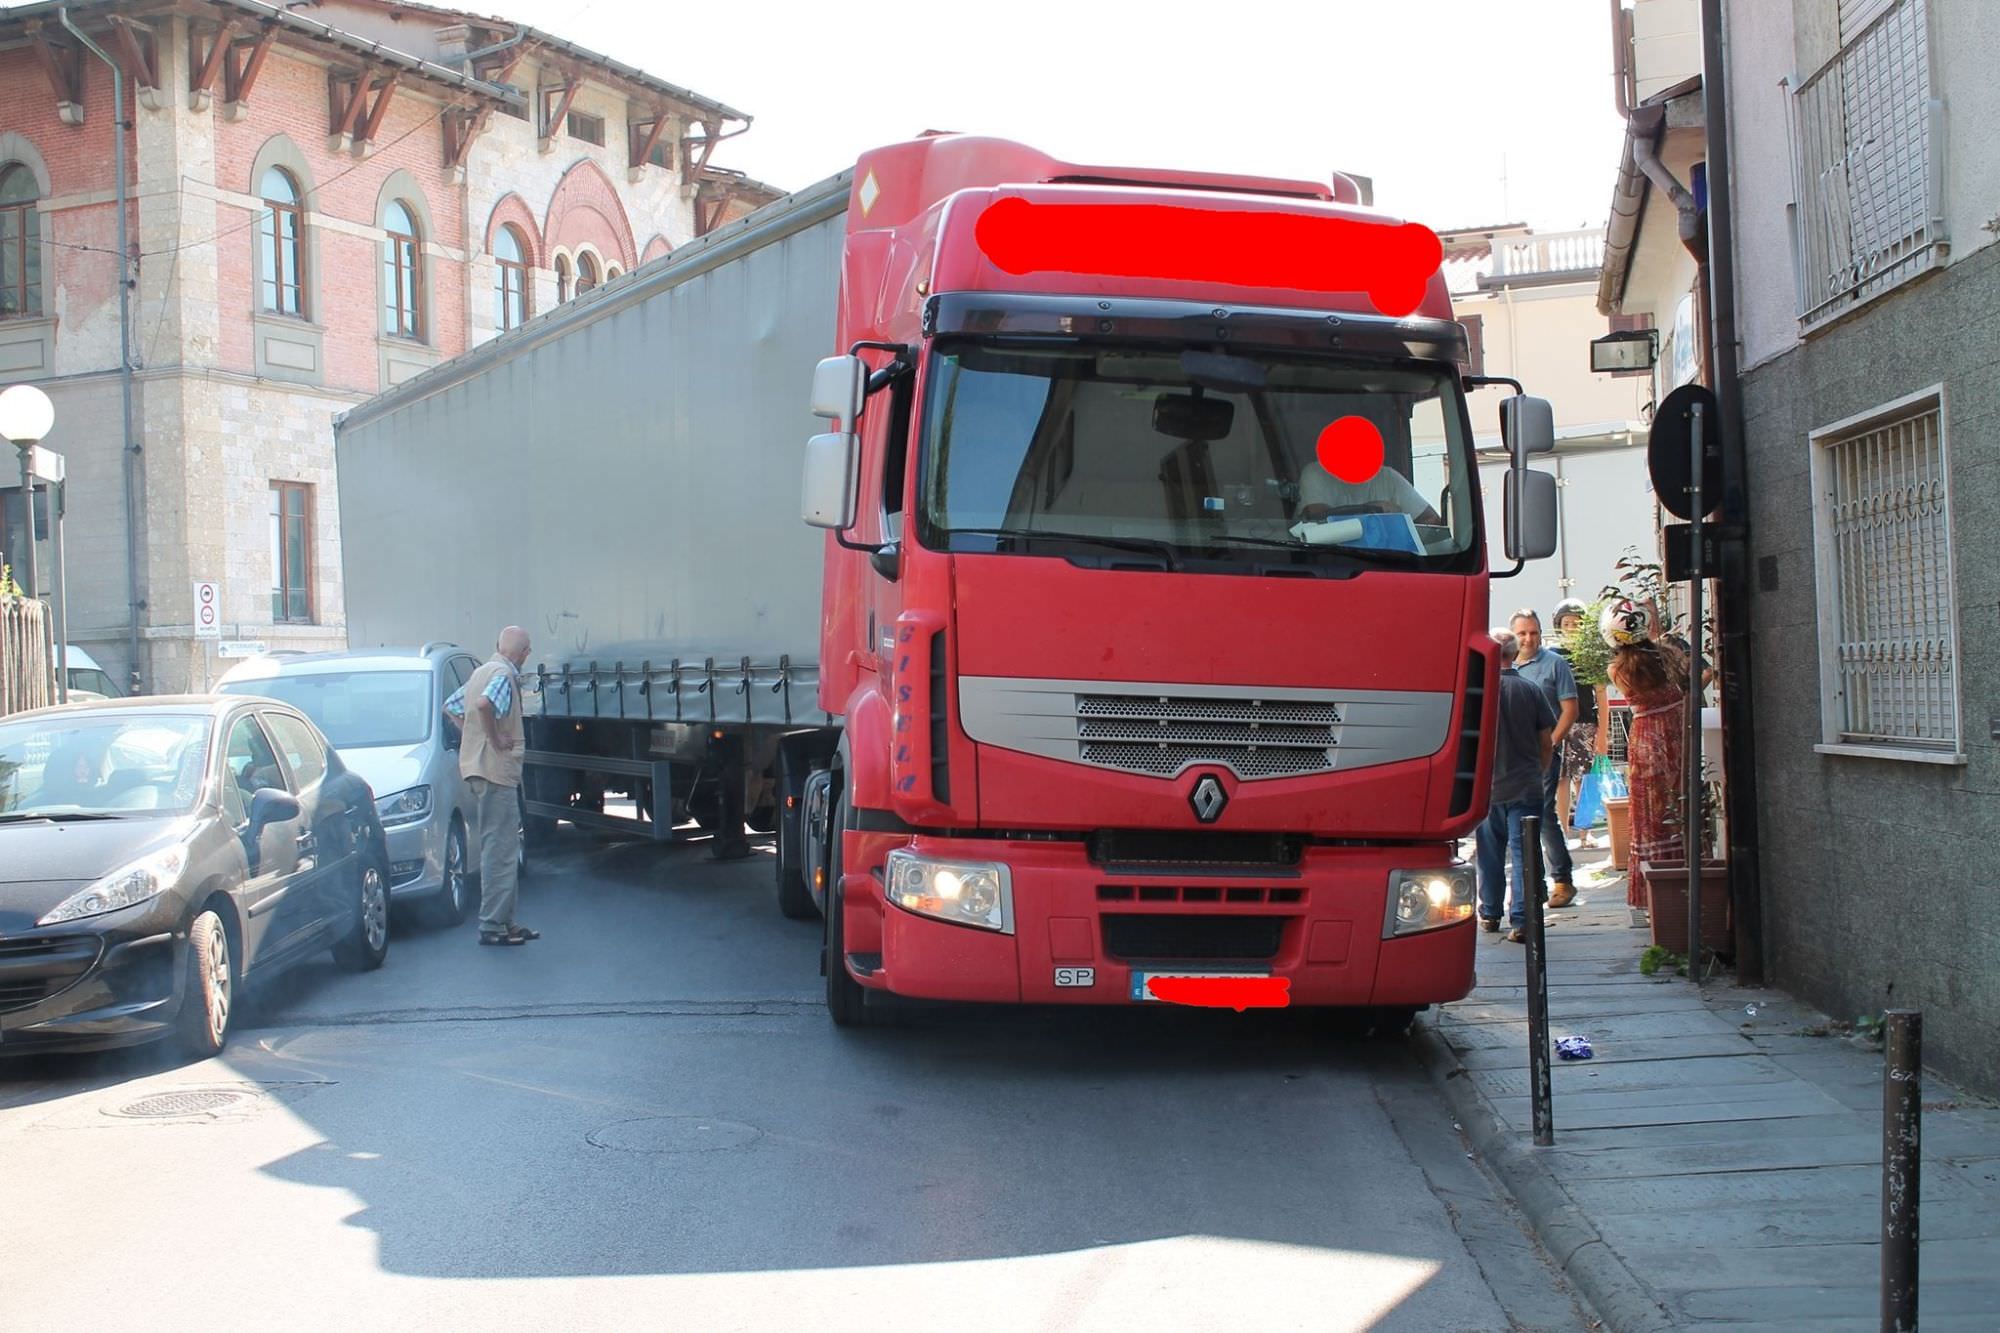 Un camion blocca la strada. Fratelli d’Italia: “Colpa delle scelte assurde del sindaco Del Dotto”